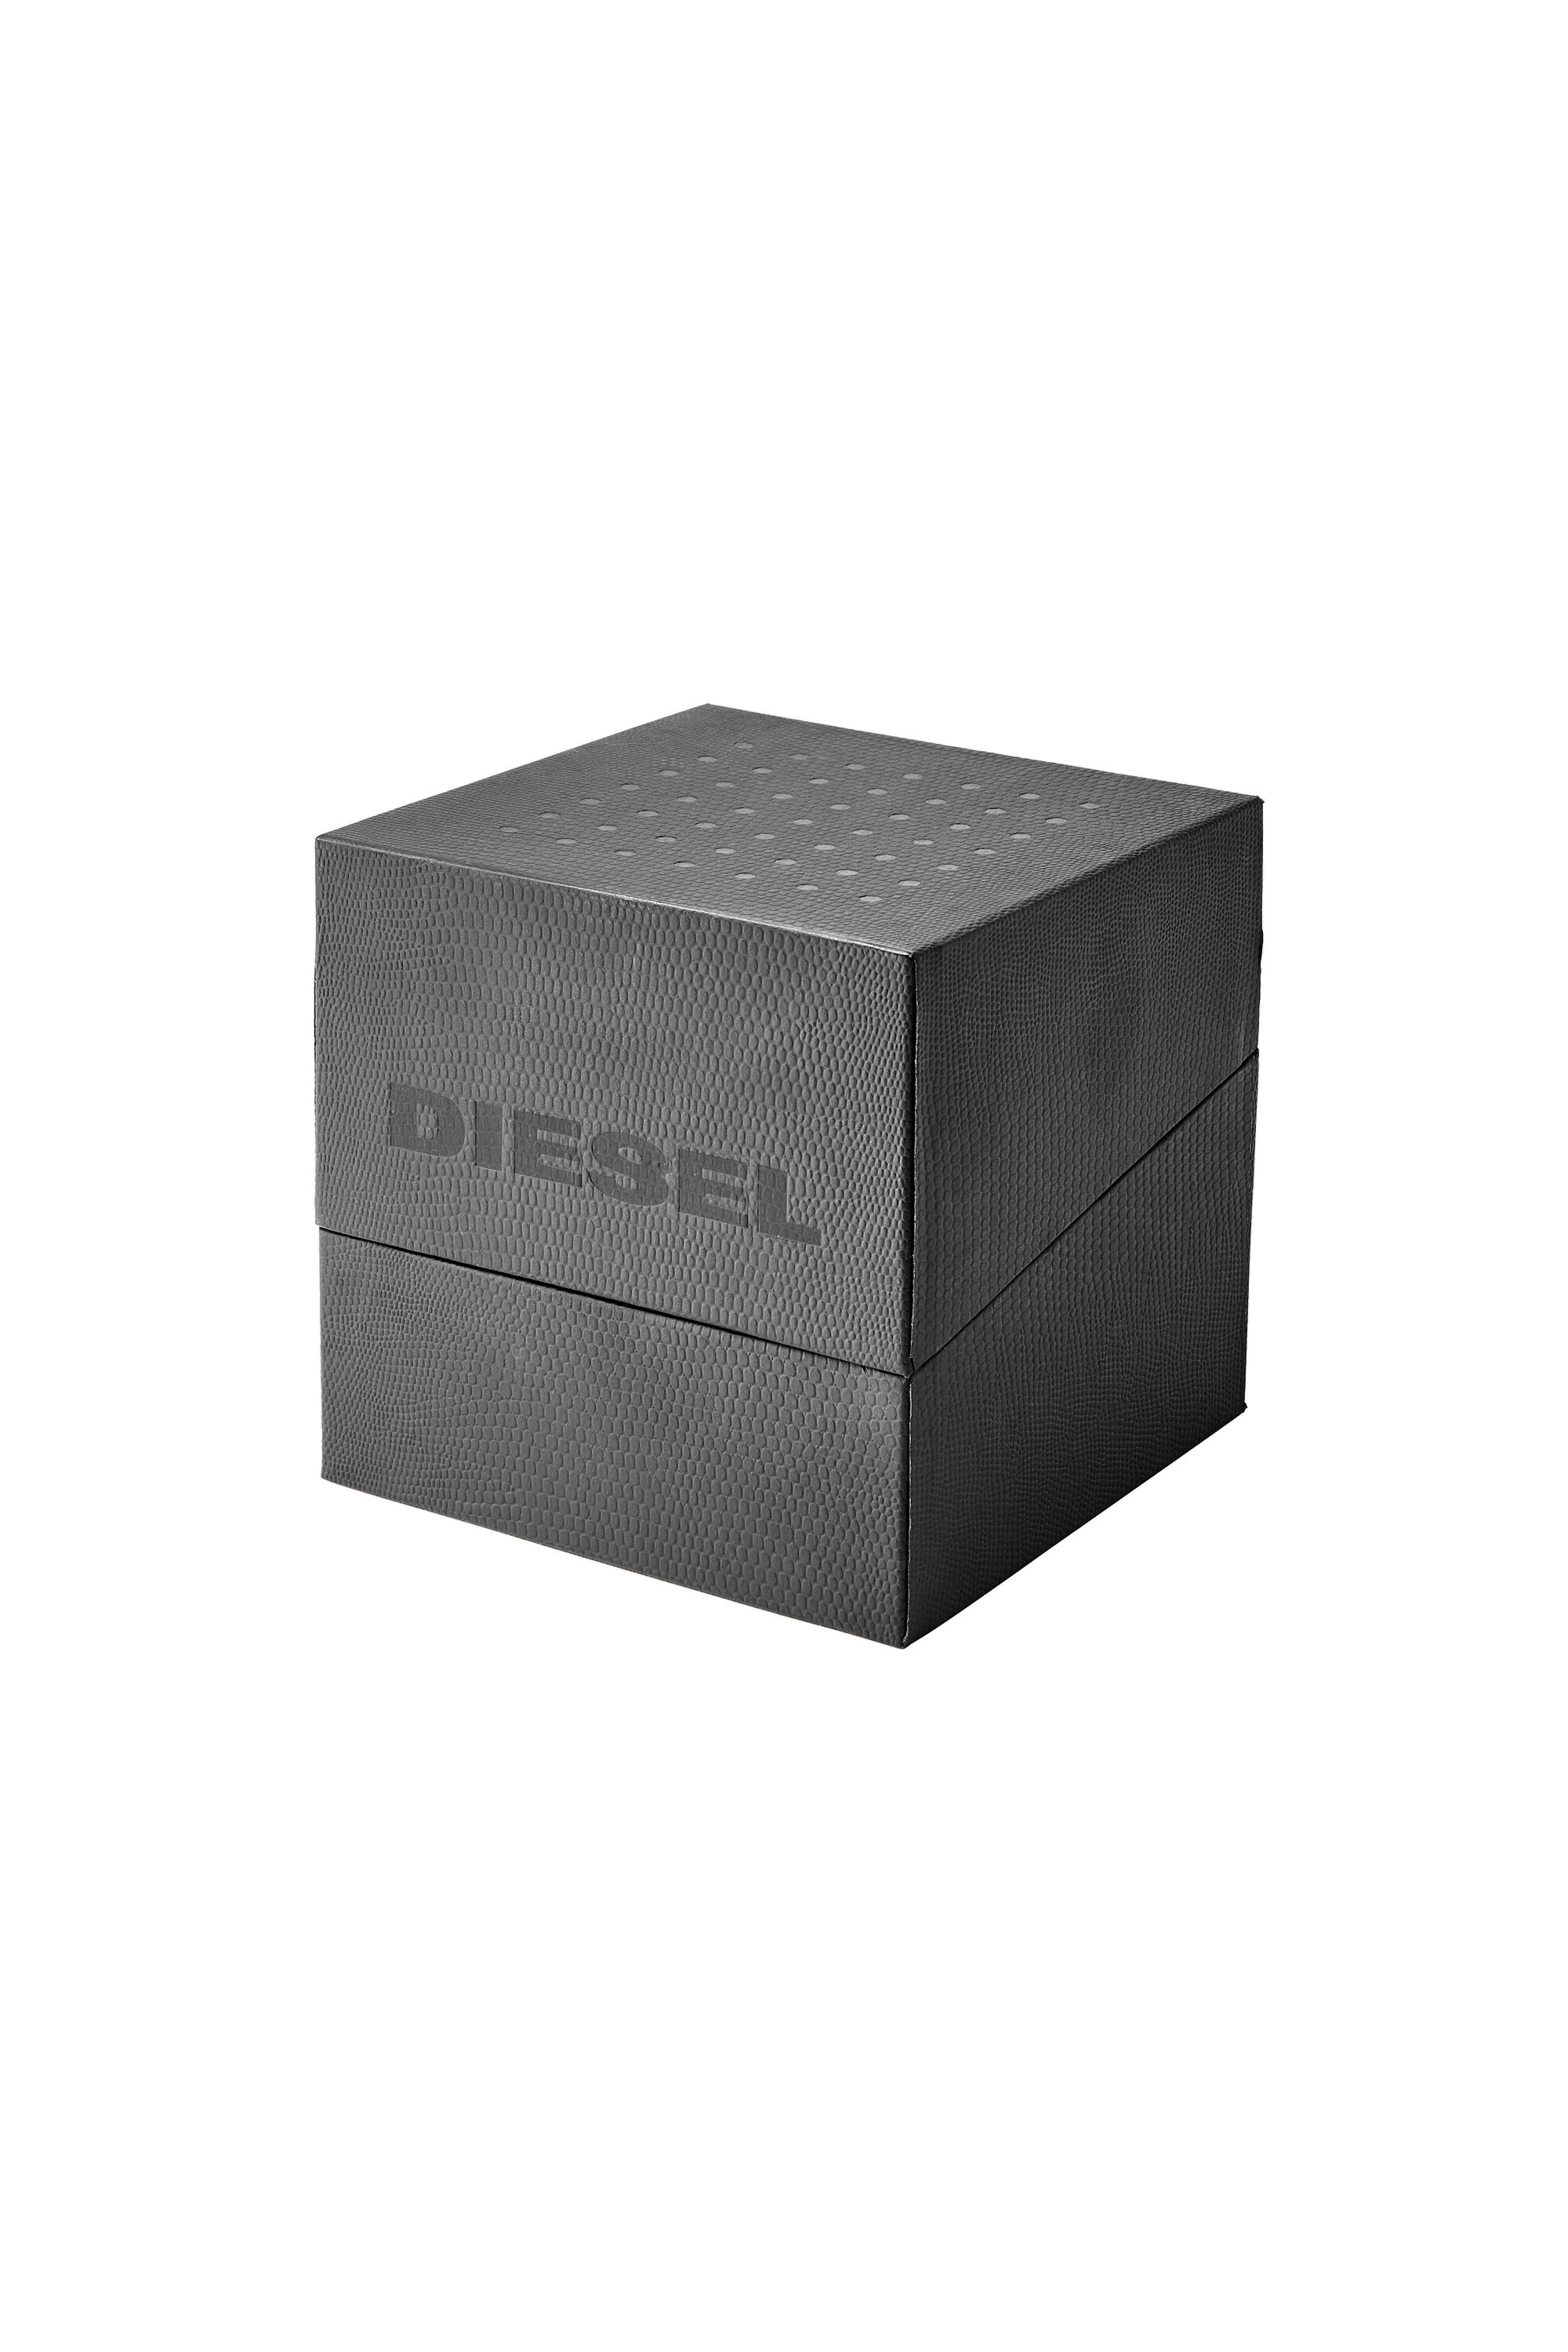 Diesel - DZ1902, Grey - Image 5